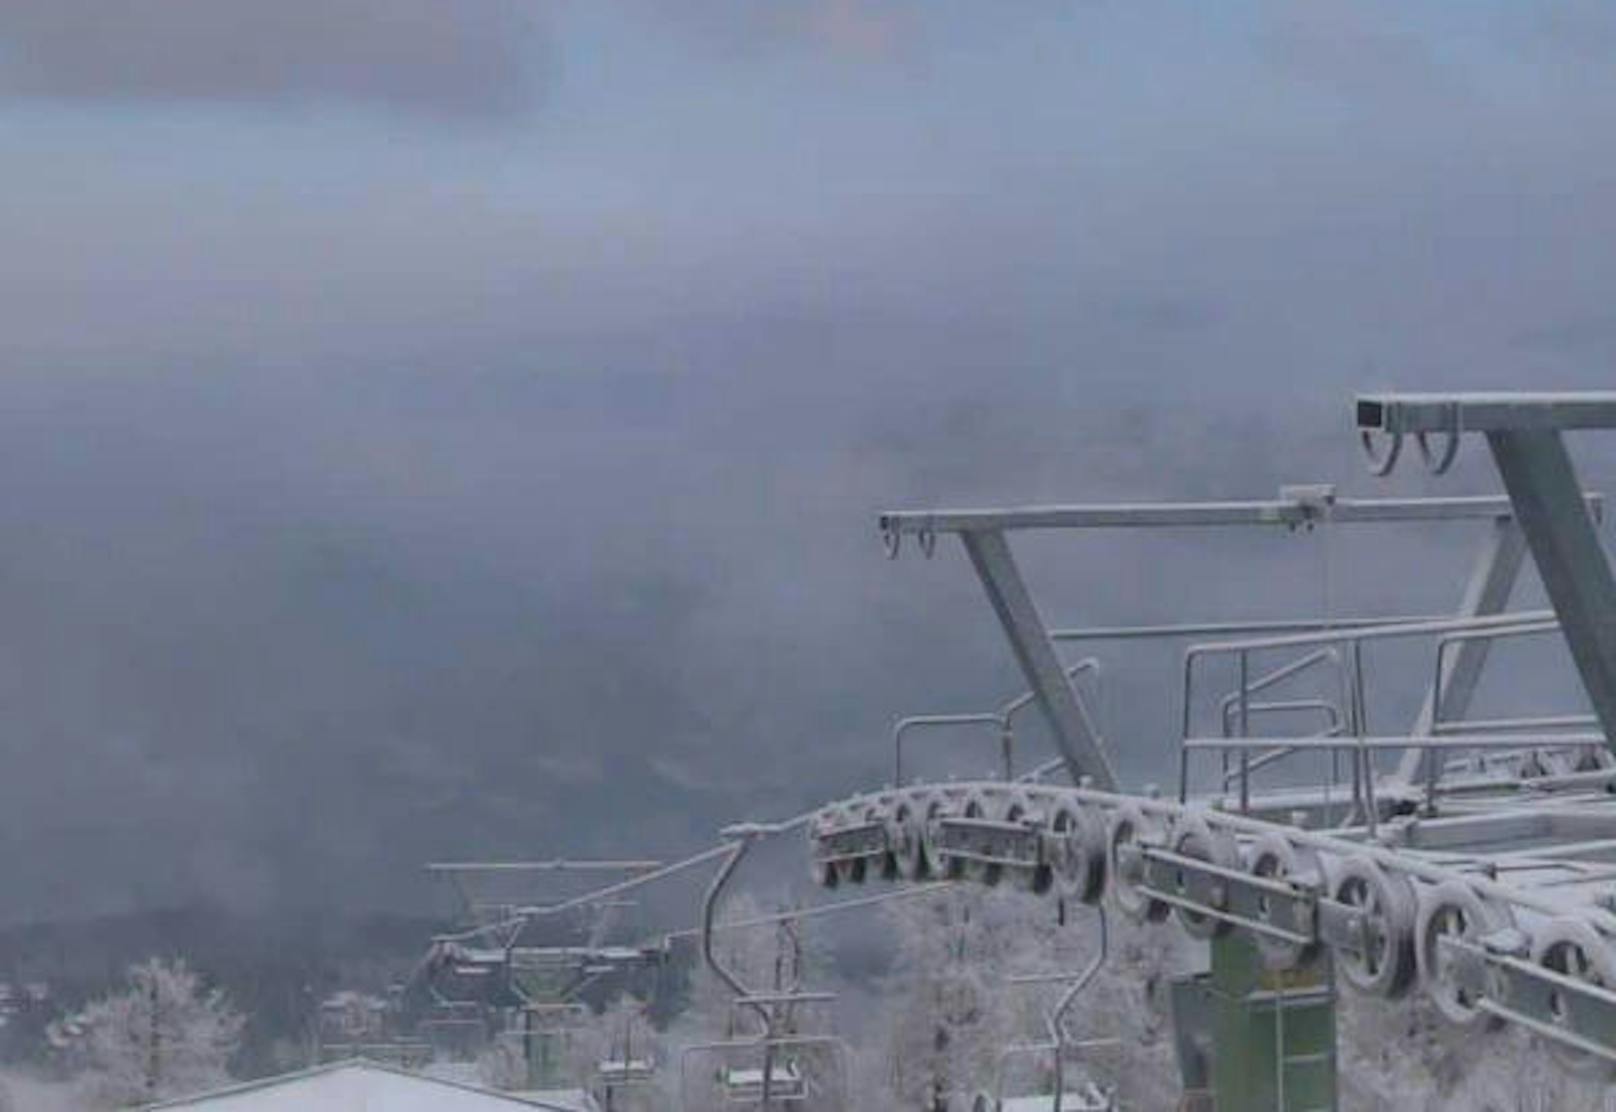 Auf den Bergen liegt ebenfalls Schnee. Ende November, Anfang Dezember sperren die meisten Skigebiete auf. Hier die Bergstation Hössexpress. (Foto: Bergfex)